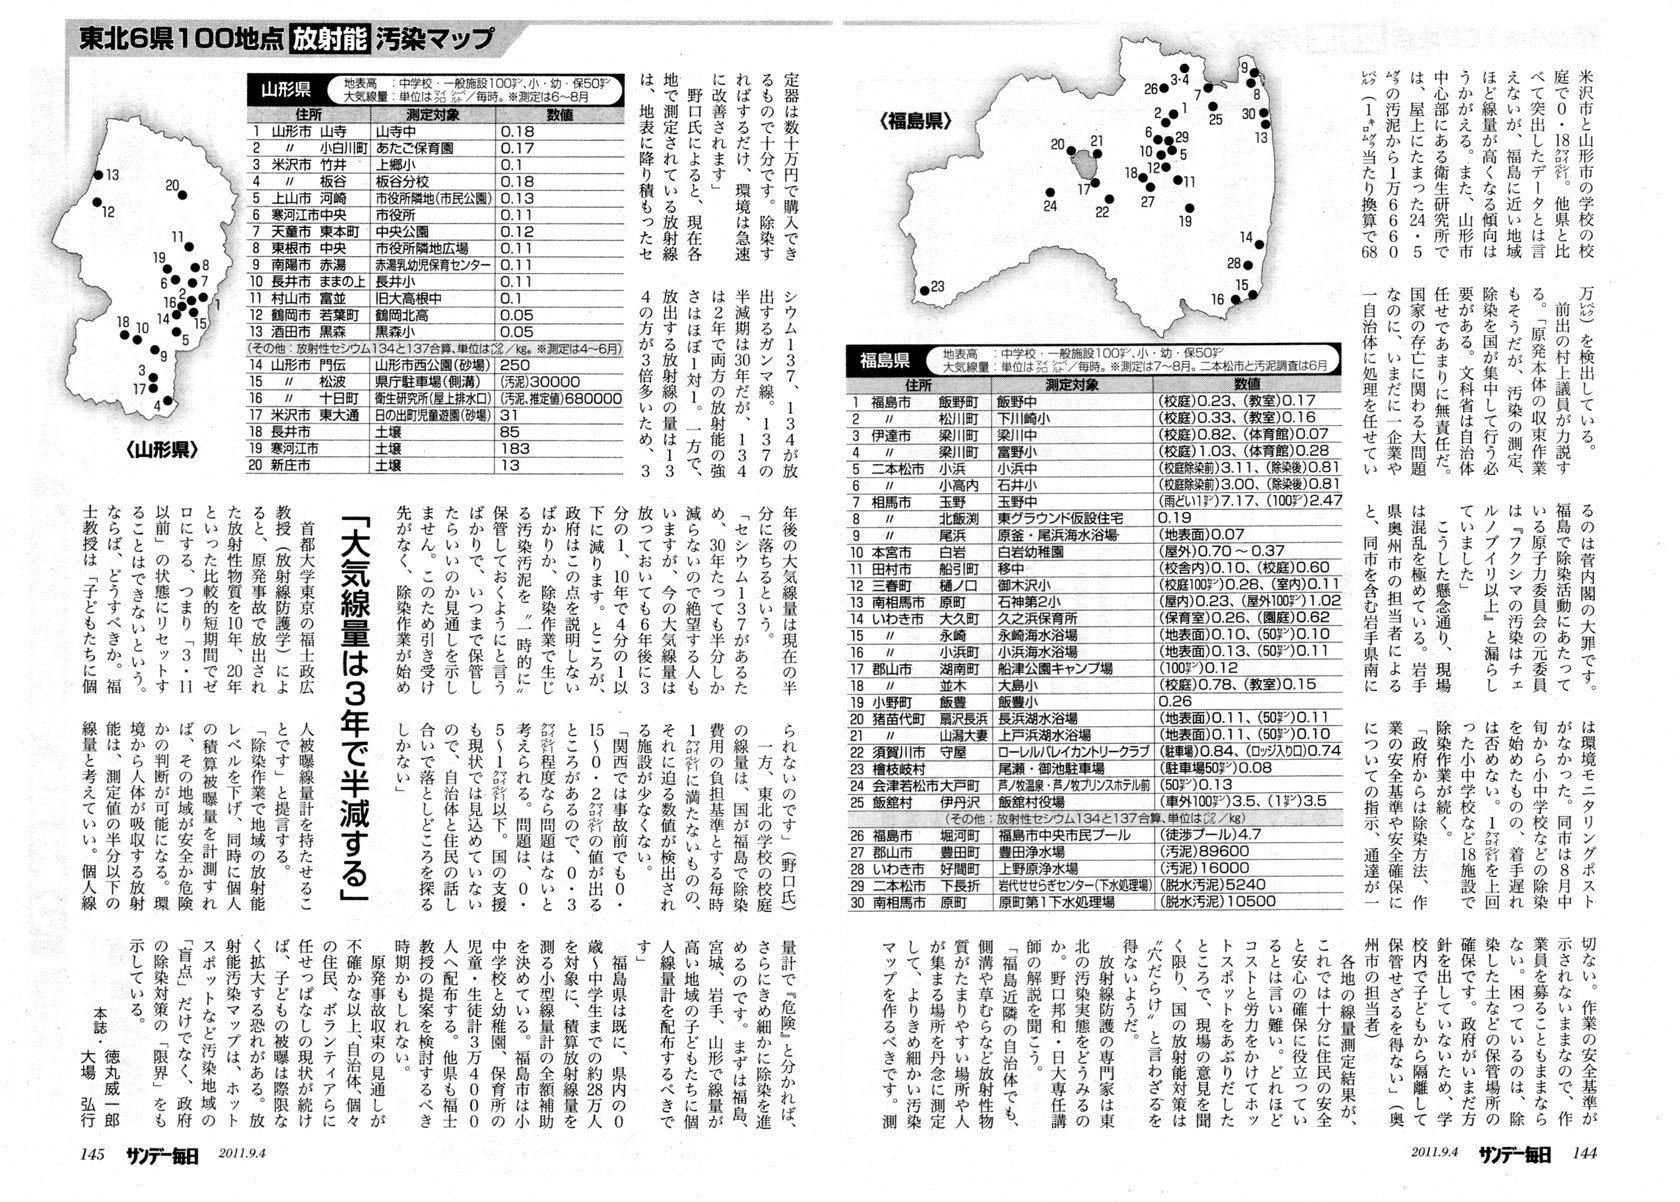 2011年東日本大地震、福島原発、放射能汚染、津波